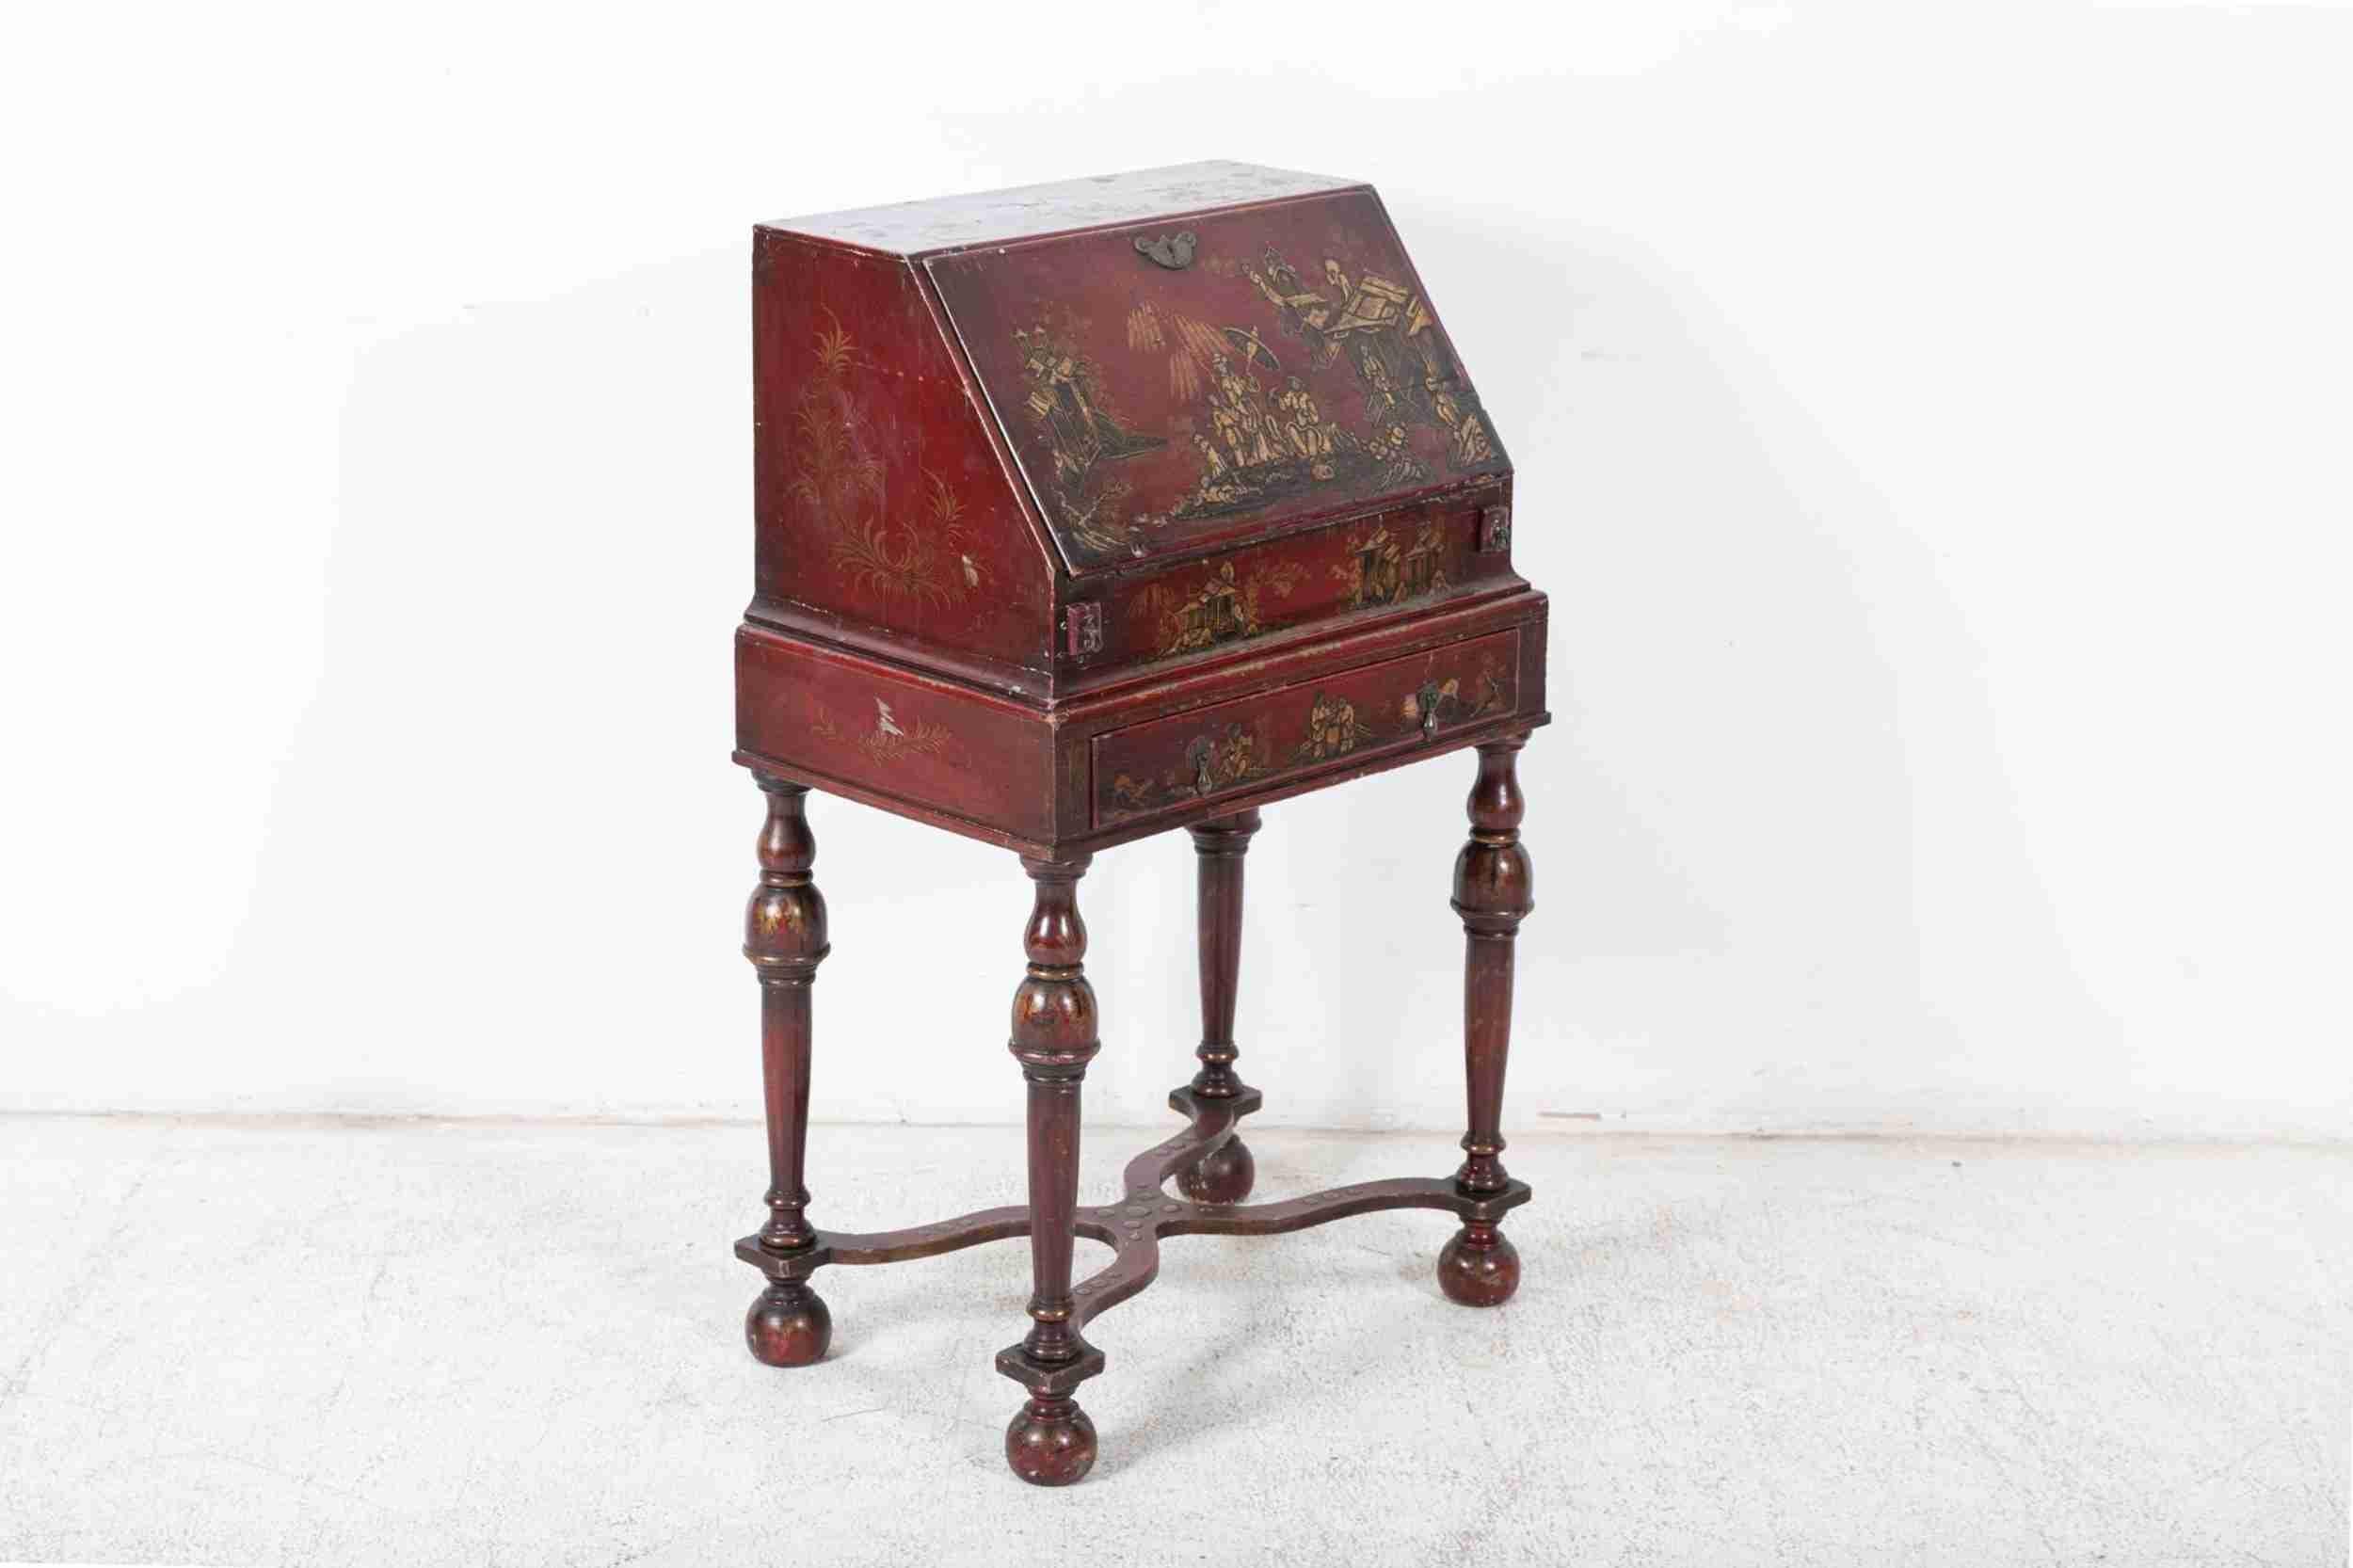 CIRCA 1900

Englischer dekorativer Chinoiserie-Schreibtisch - Bonheur Du Jour. Tolle Farbe und Patina mit Chinoiserie-Dekor.

sku 1006

Maße: B59 x T39 x H98 cm.